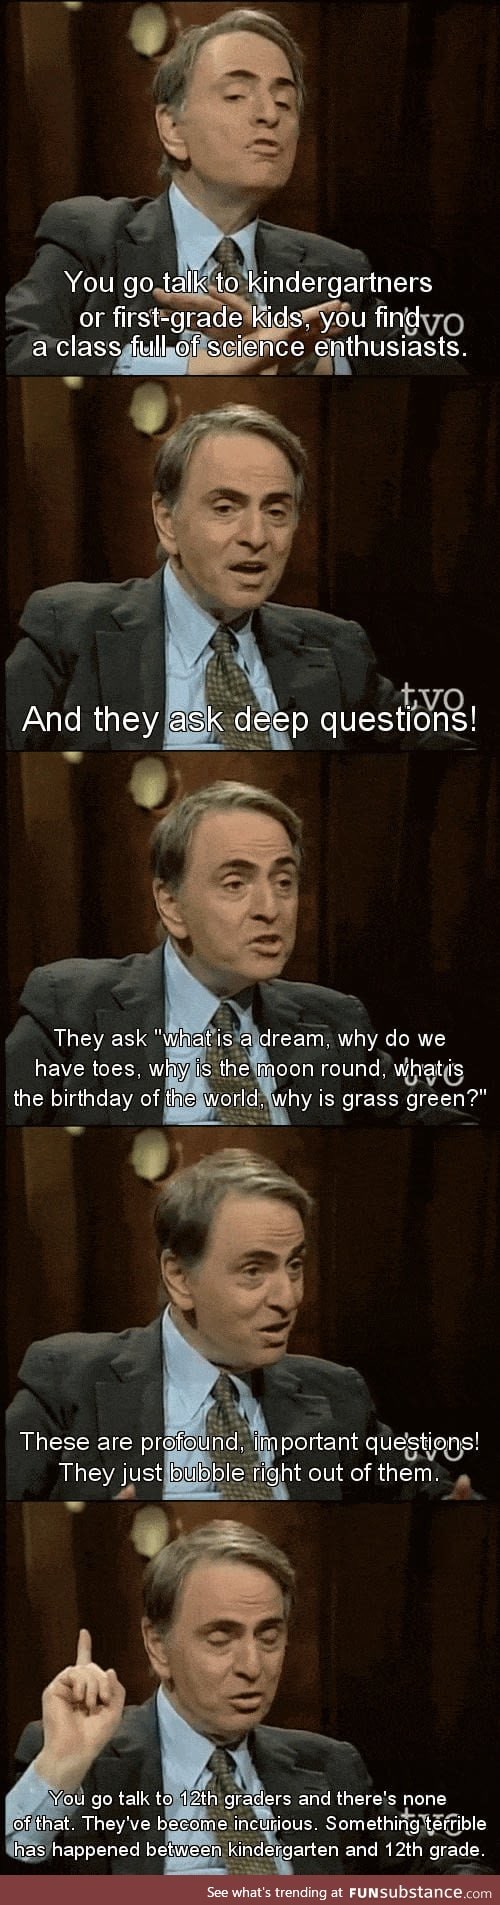 Carl Sagan at his best